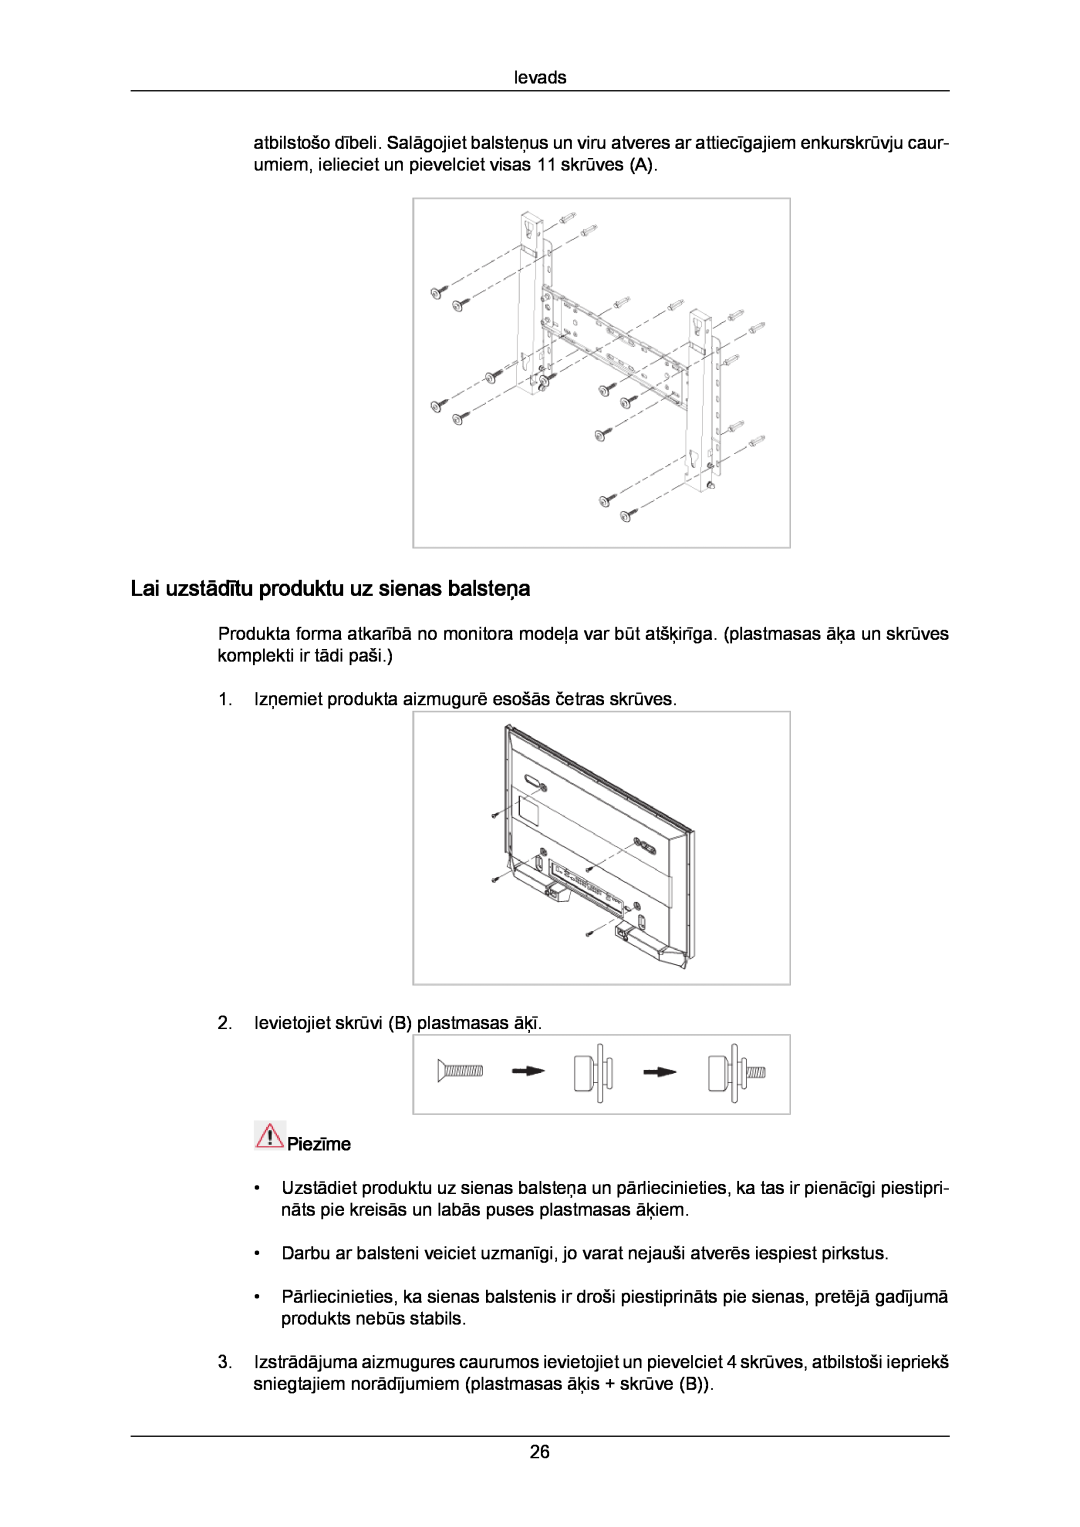 Samsung PH50KPPLBF/EN, PH63KPFLBF/EN manual Lai uzstādītu produktu uz sienas balsteņa, Piezīme 